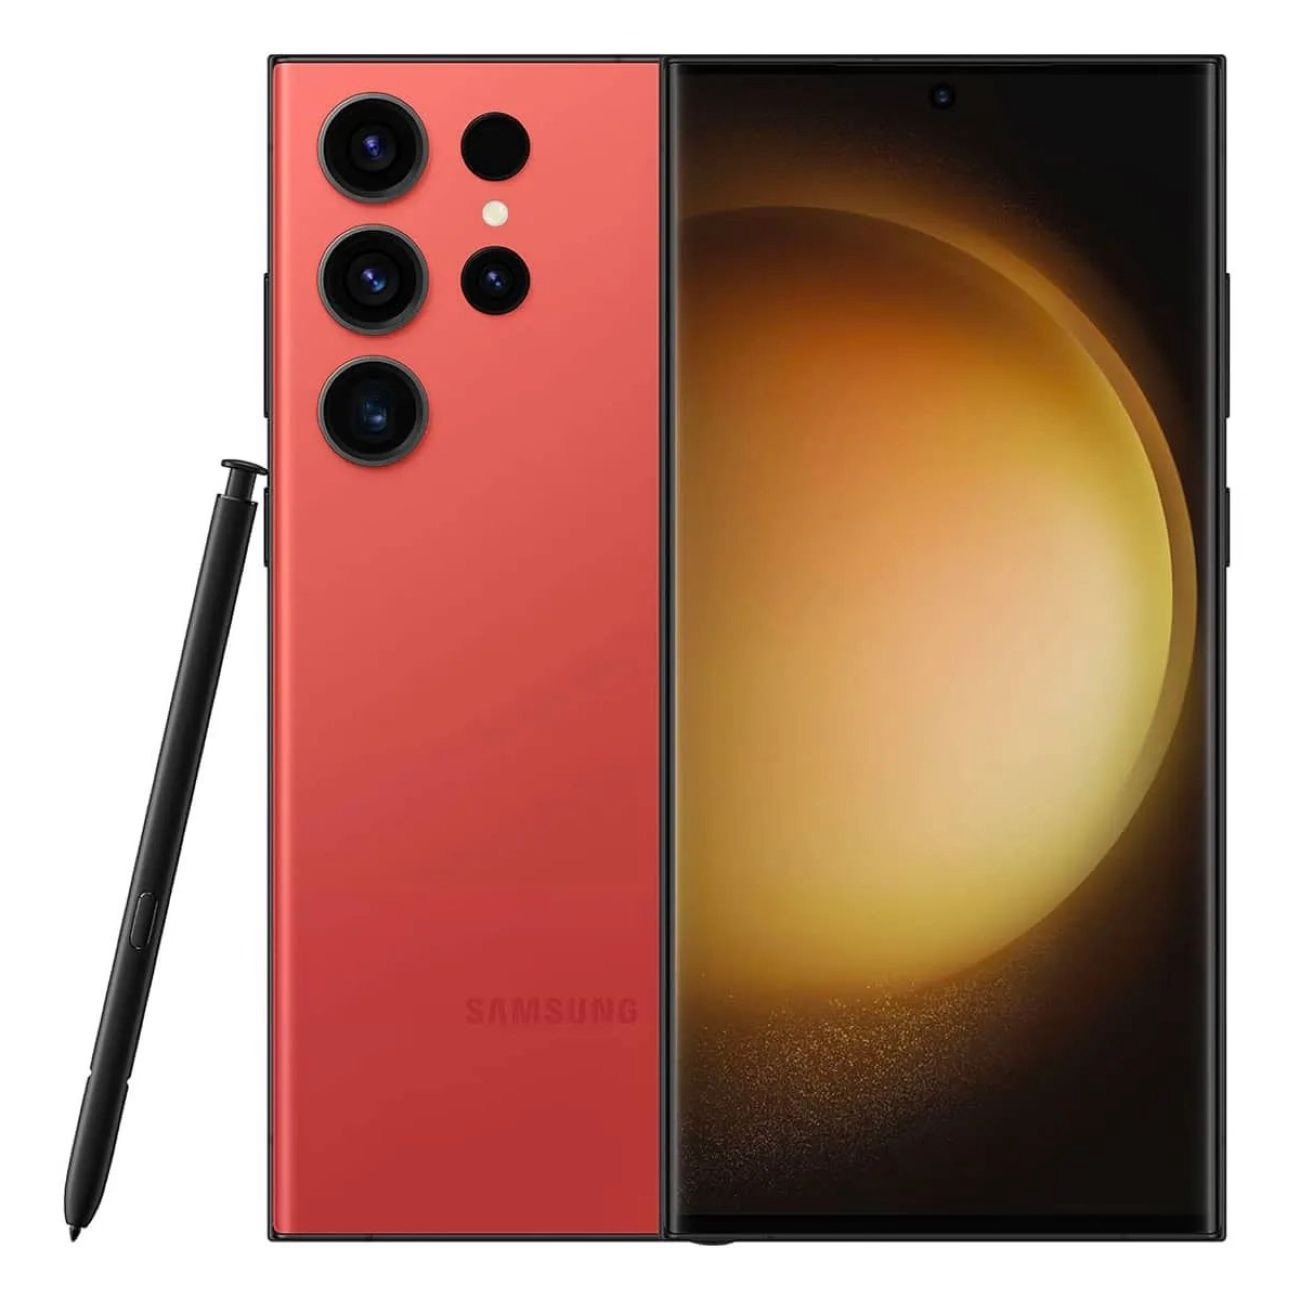 Купить смартфон samsung galaxy s23 ultra 12/512gb red S-Серия в официальном магазине Apple, Samsung, Xiaomi. iPixel.ru Купить, заказ, кредит, рассрочка, отзывы,  характеристики, цена,  фотографии, в подарок.